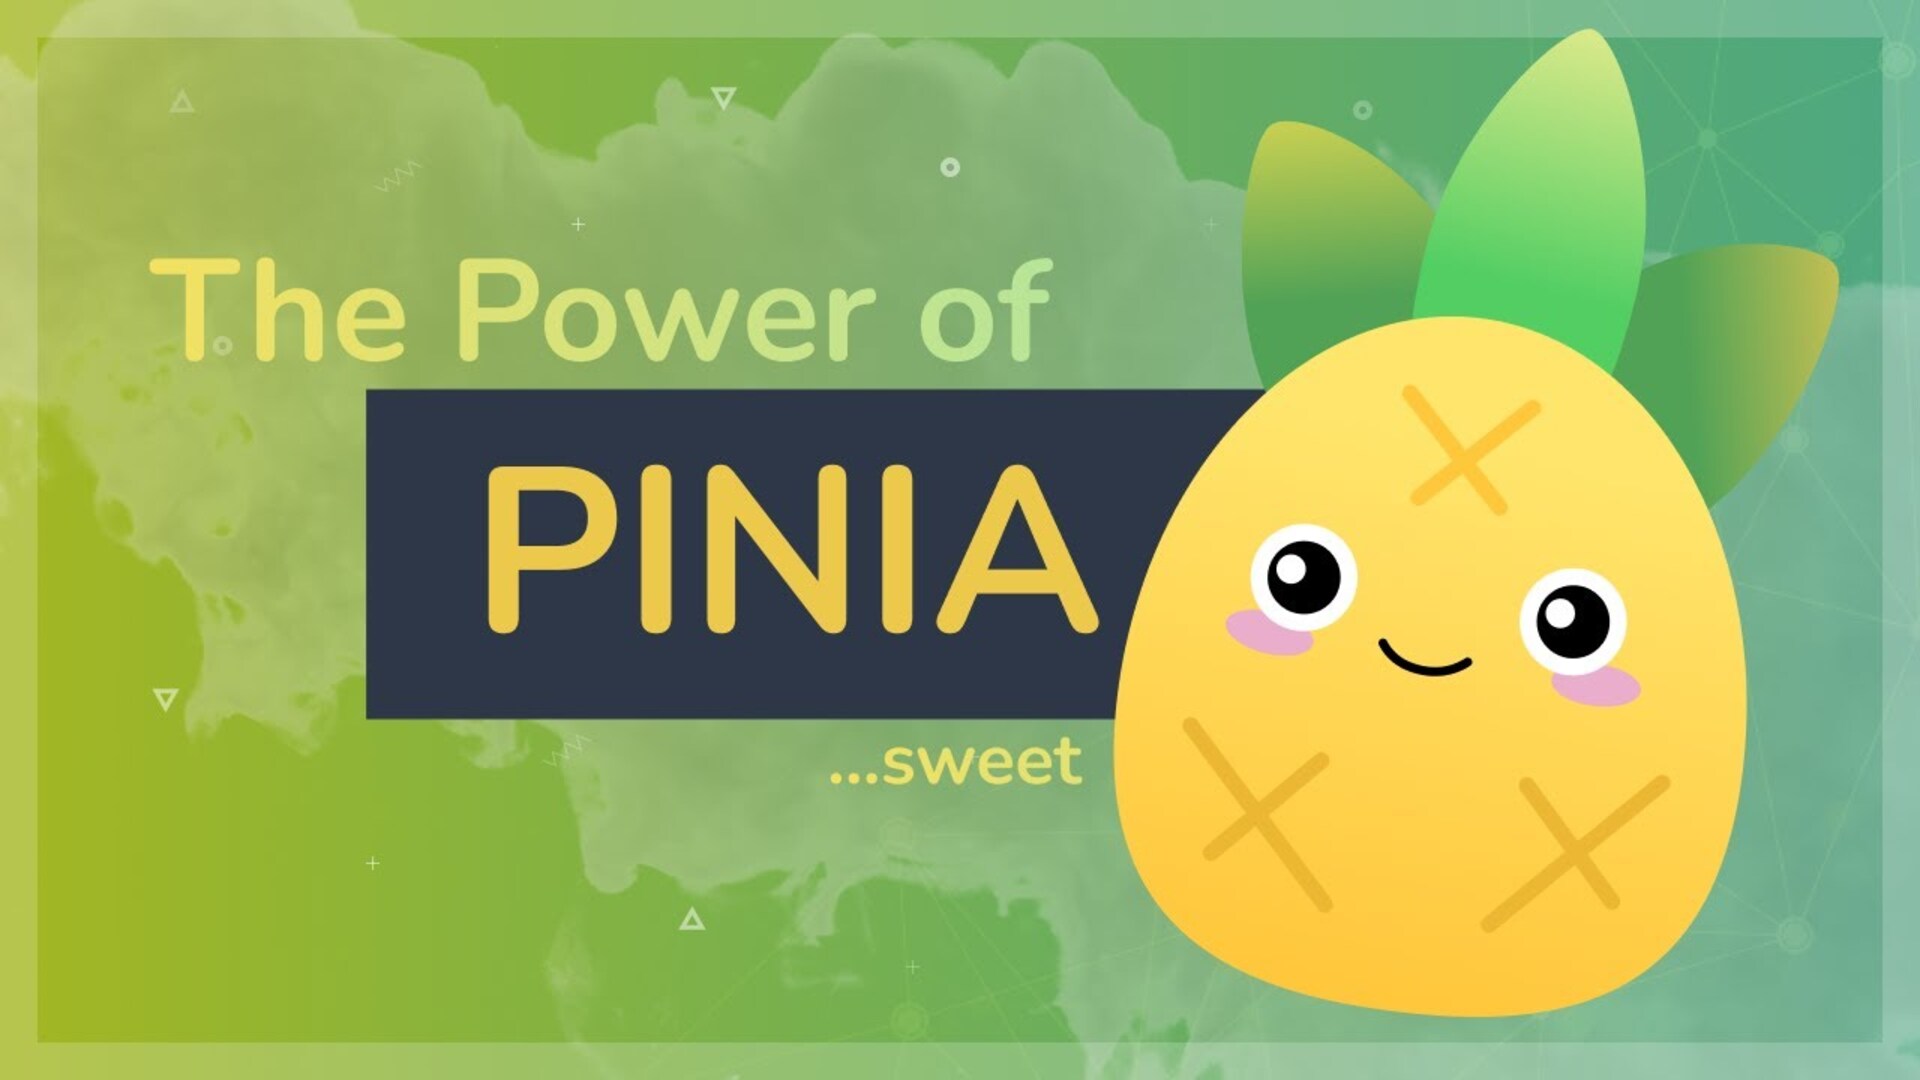 Vue.jsの新しい状態管理ツール「Pinia」をご紹介！